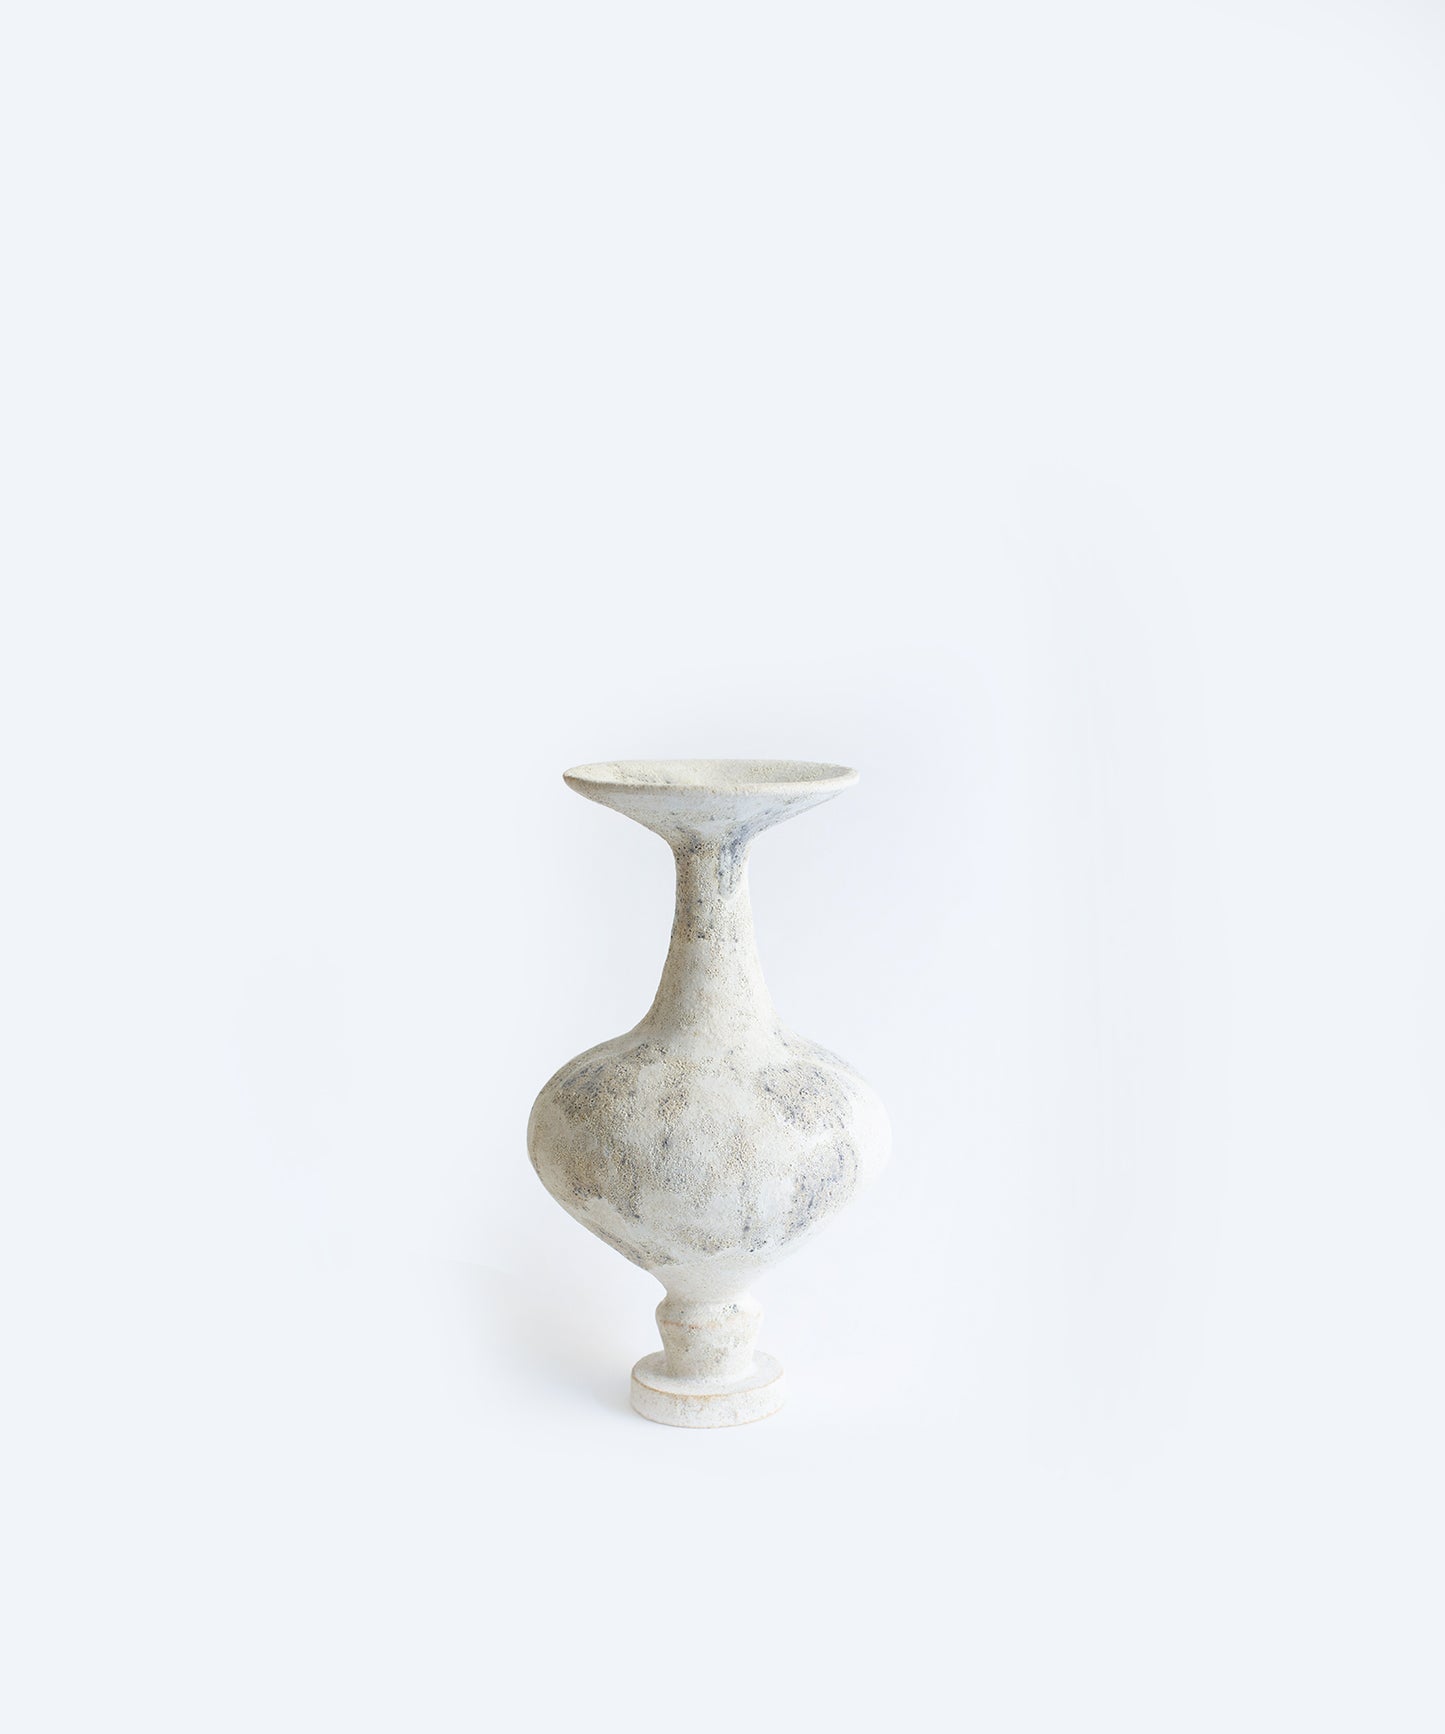 Arq 002 Carabo Vase